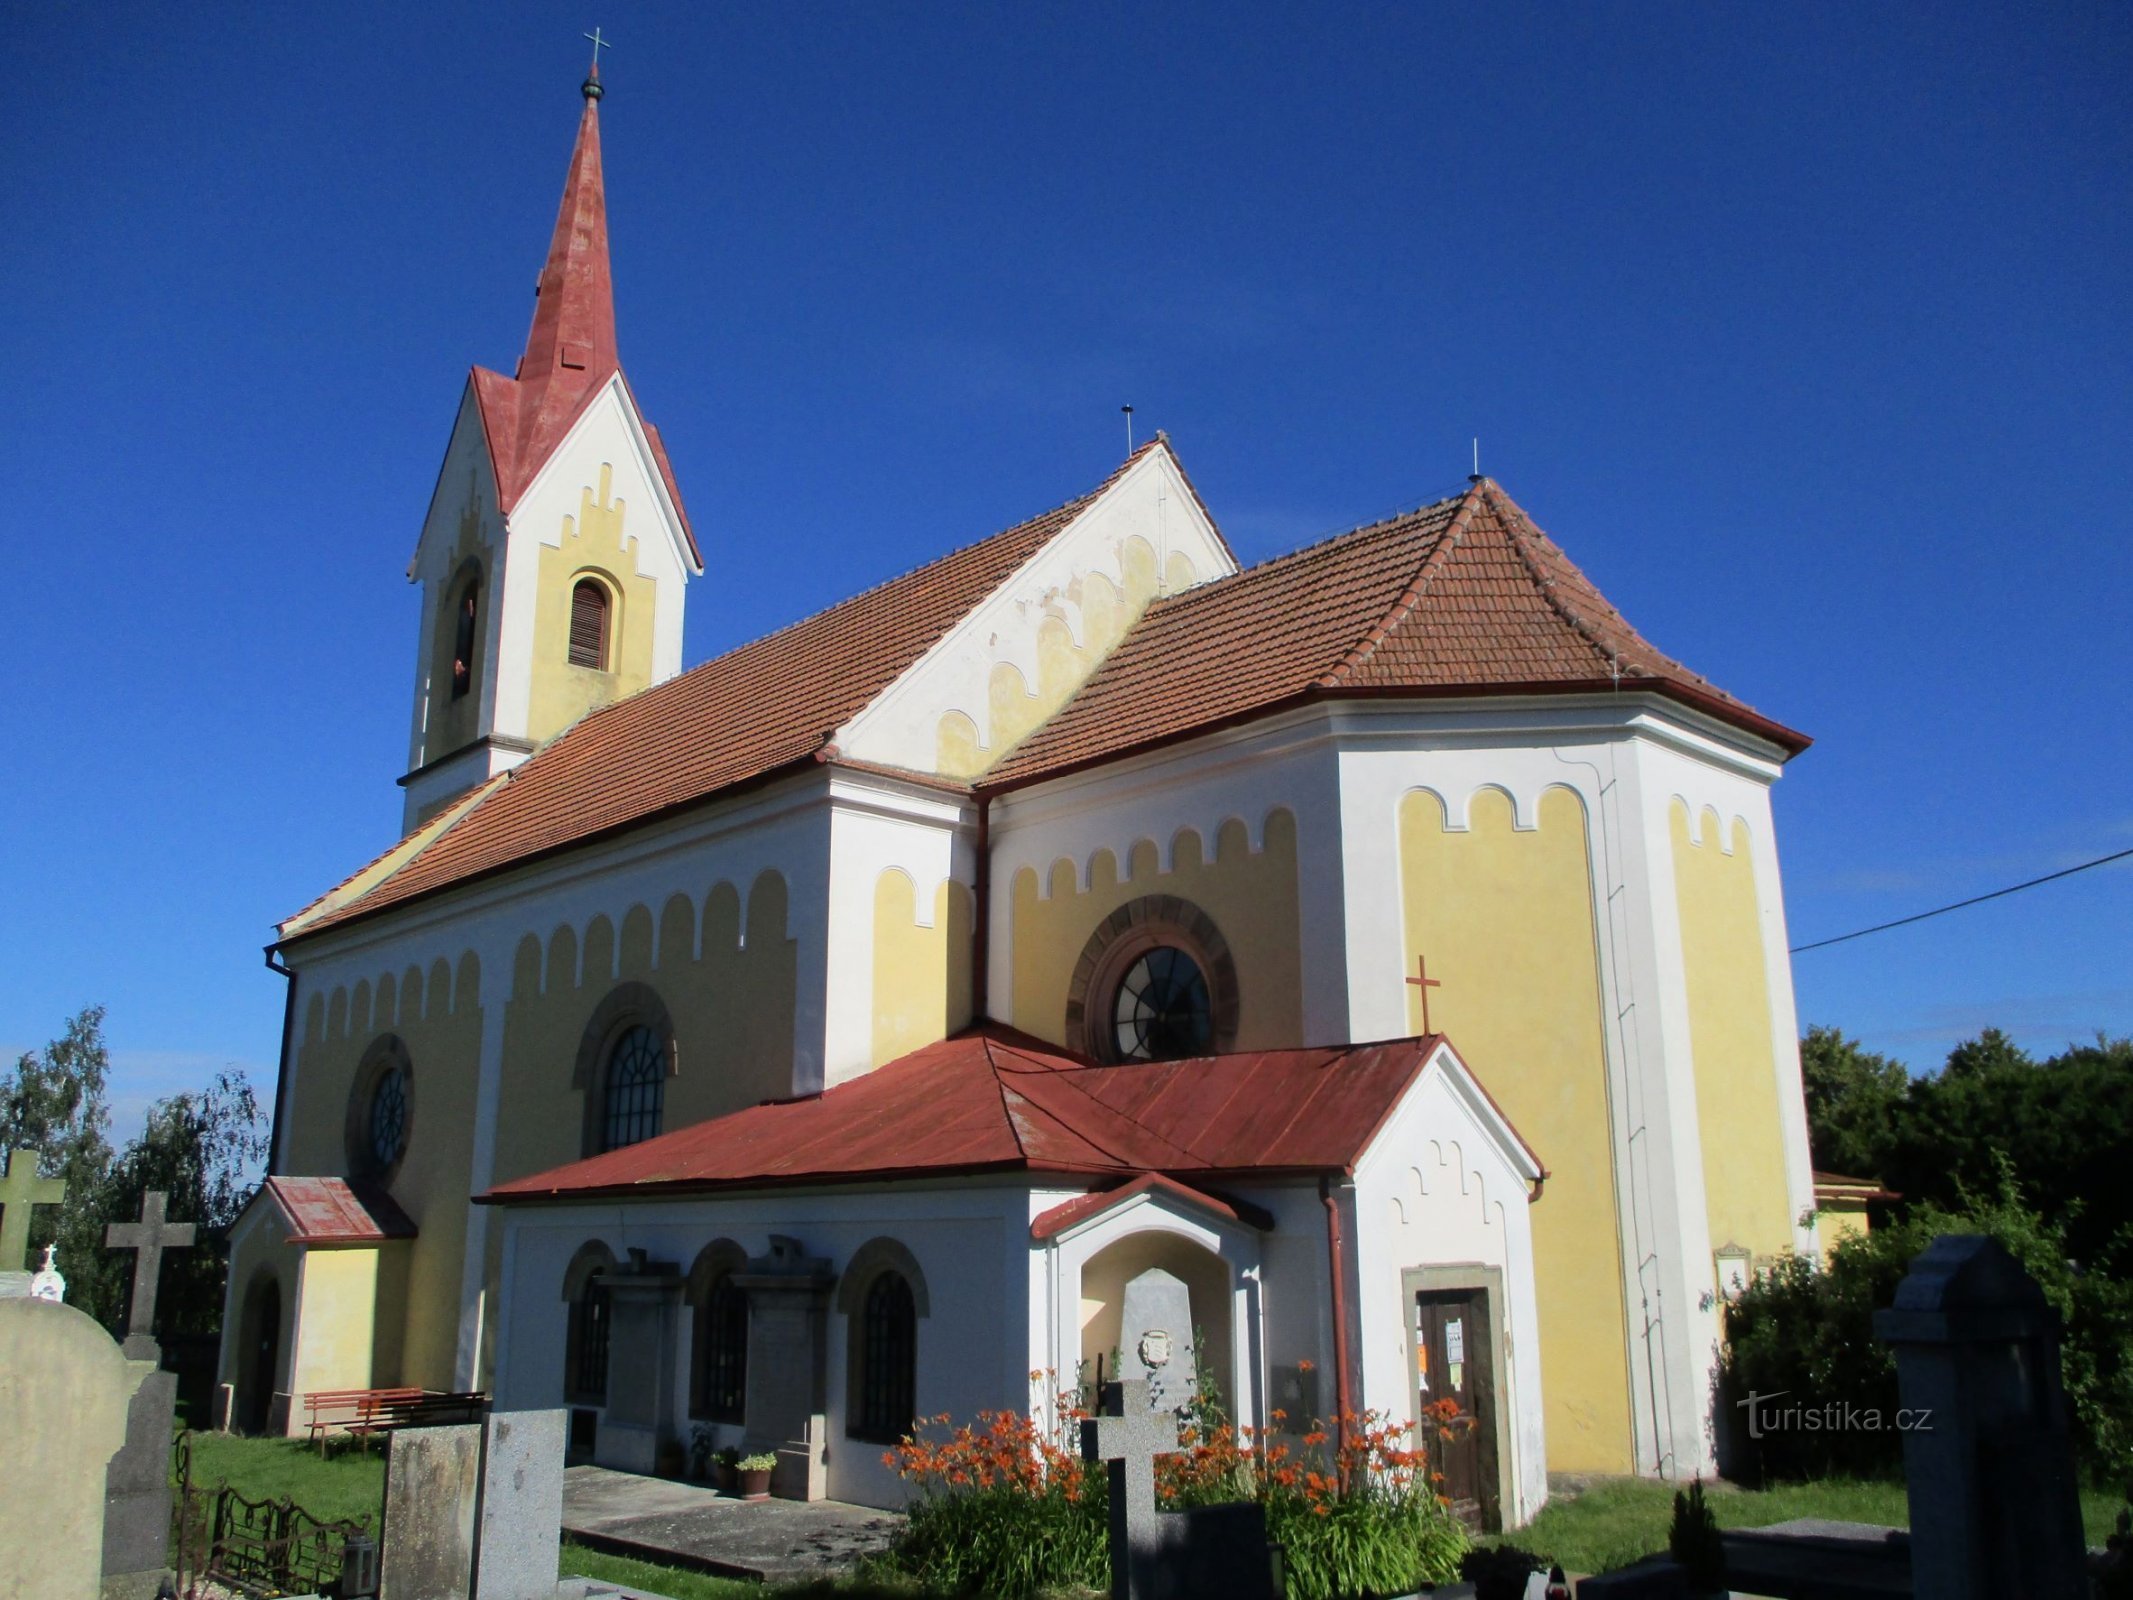 Церква св. Філіп і Якуб (Mlékosrby, 5.7.2020)